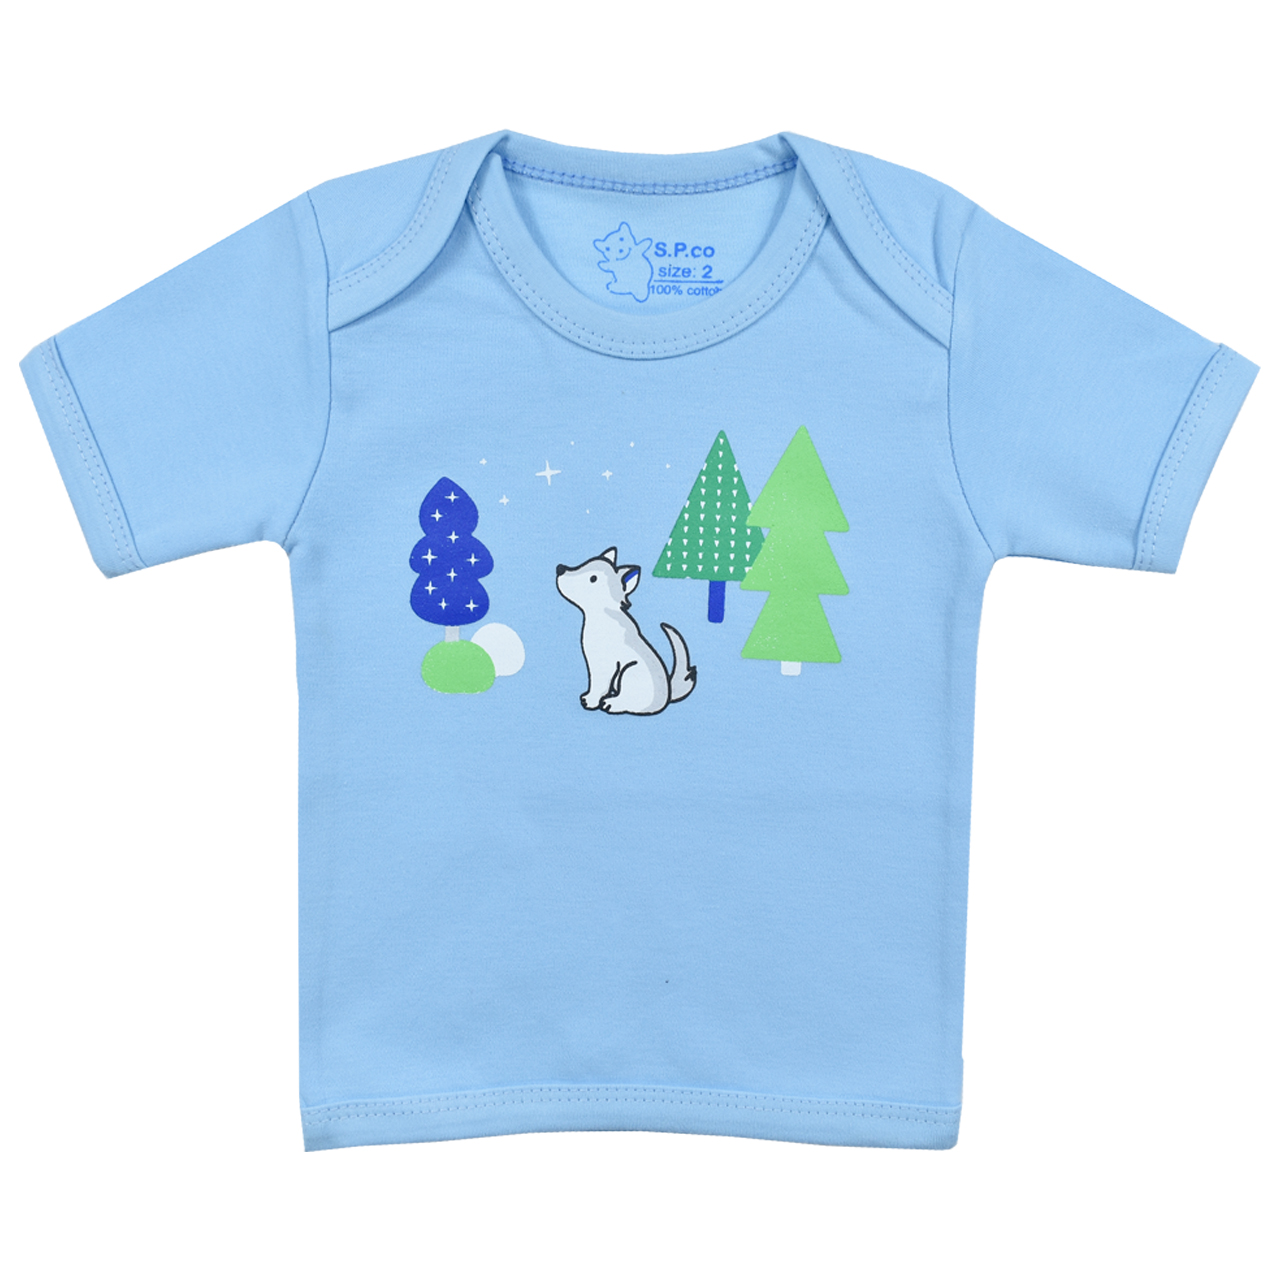 تی شرت آستین کوتاه نوزادی اسپیکو کد 300 -3 بسته دو عددی -  - 3